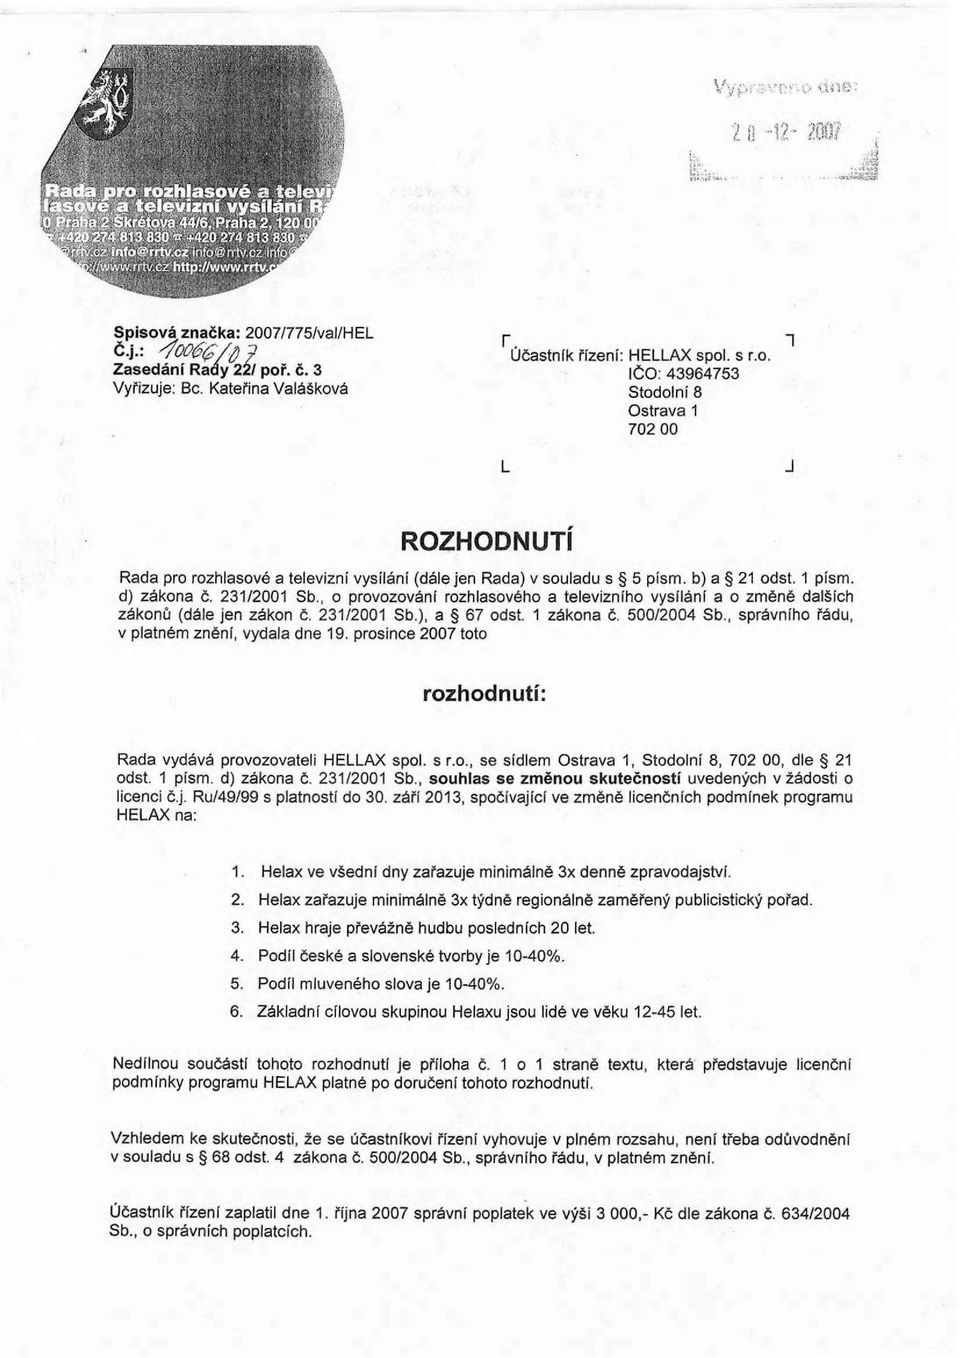 , správního řádu, v platném znění, vydala dne 19. prosince 2007 toto rozhodnutí: Rada vydává provozovateli HELLAX spol. s r.o., se sídlem Ostrava 1, Stodolní 8, 702 00, dle 21 odst. 1 písm.